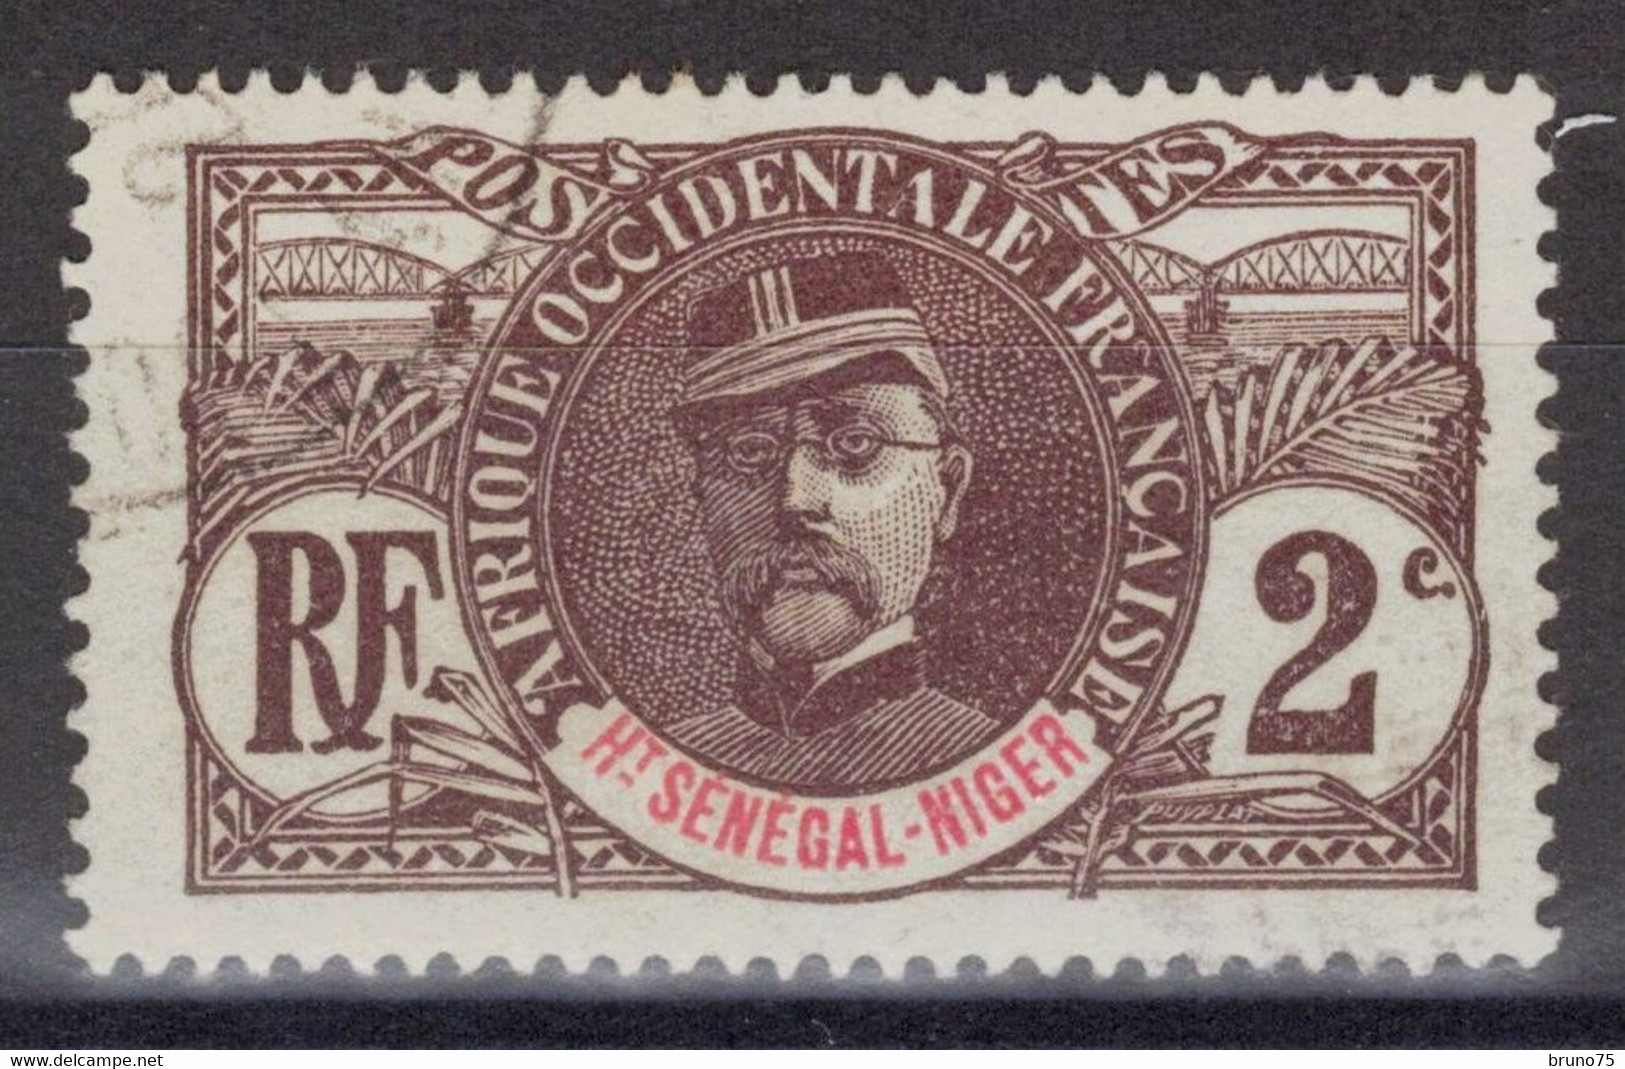 Haut-Sénégal Et Niger - YT 2 Oblitéré - 1906 - Usati